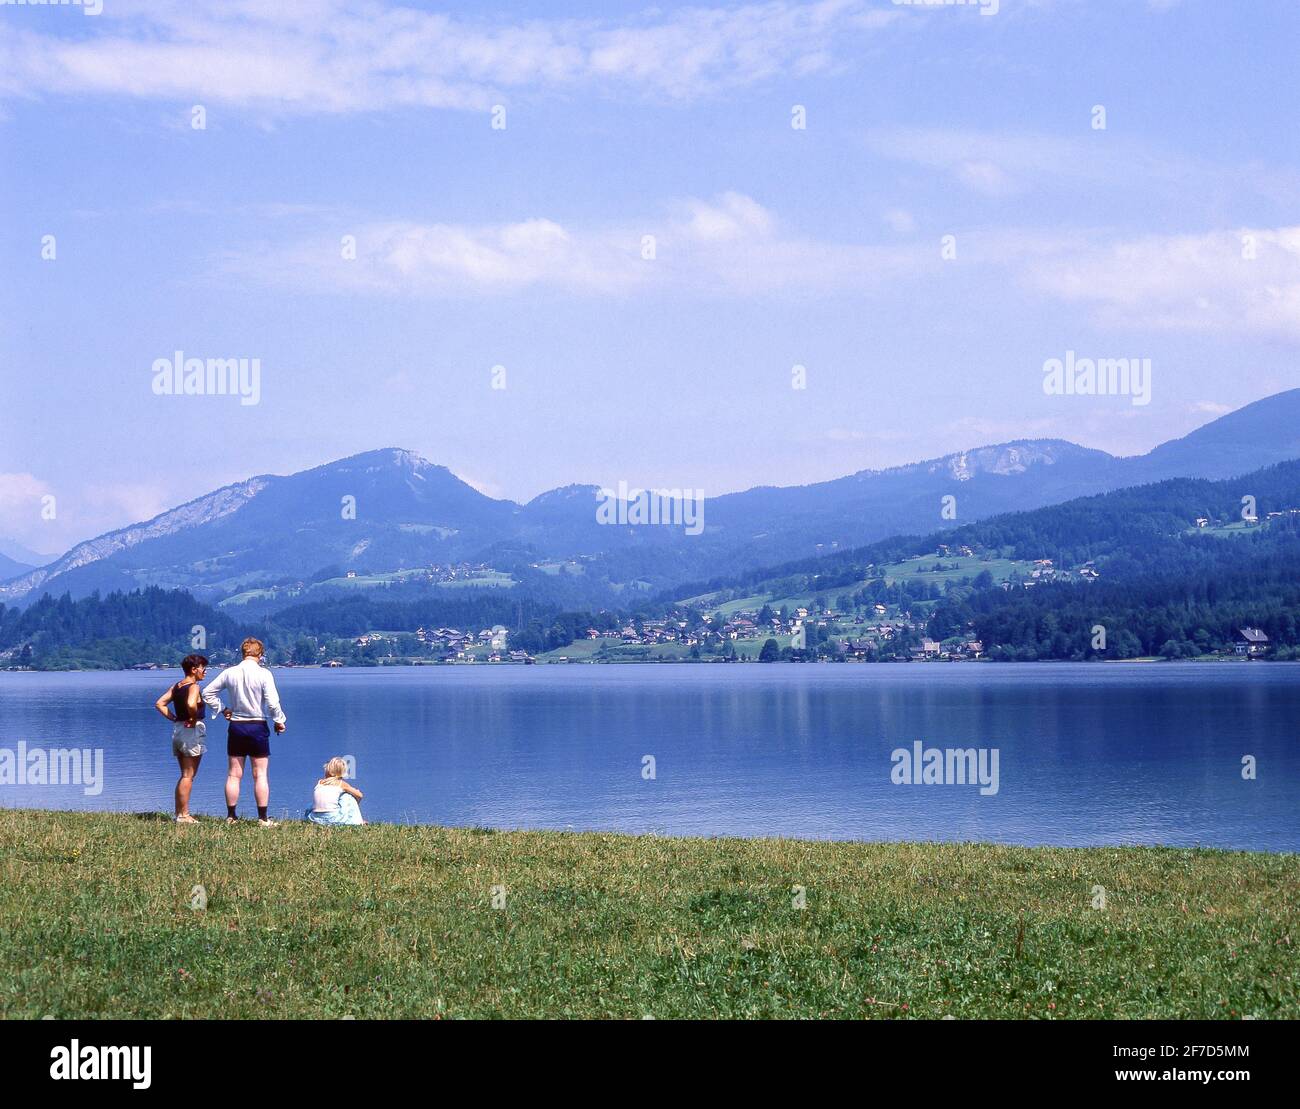 Lake Hallstatt, Hallstatt, Salzkammergut, Upper Austria, Republic of Austria Stock Photo